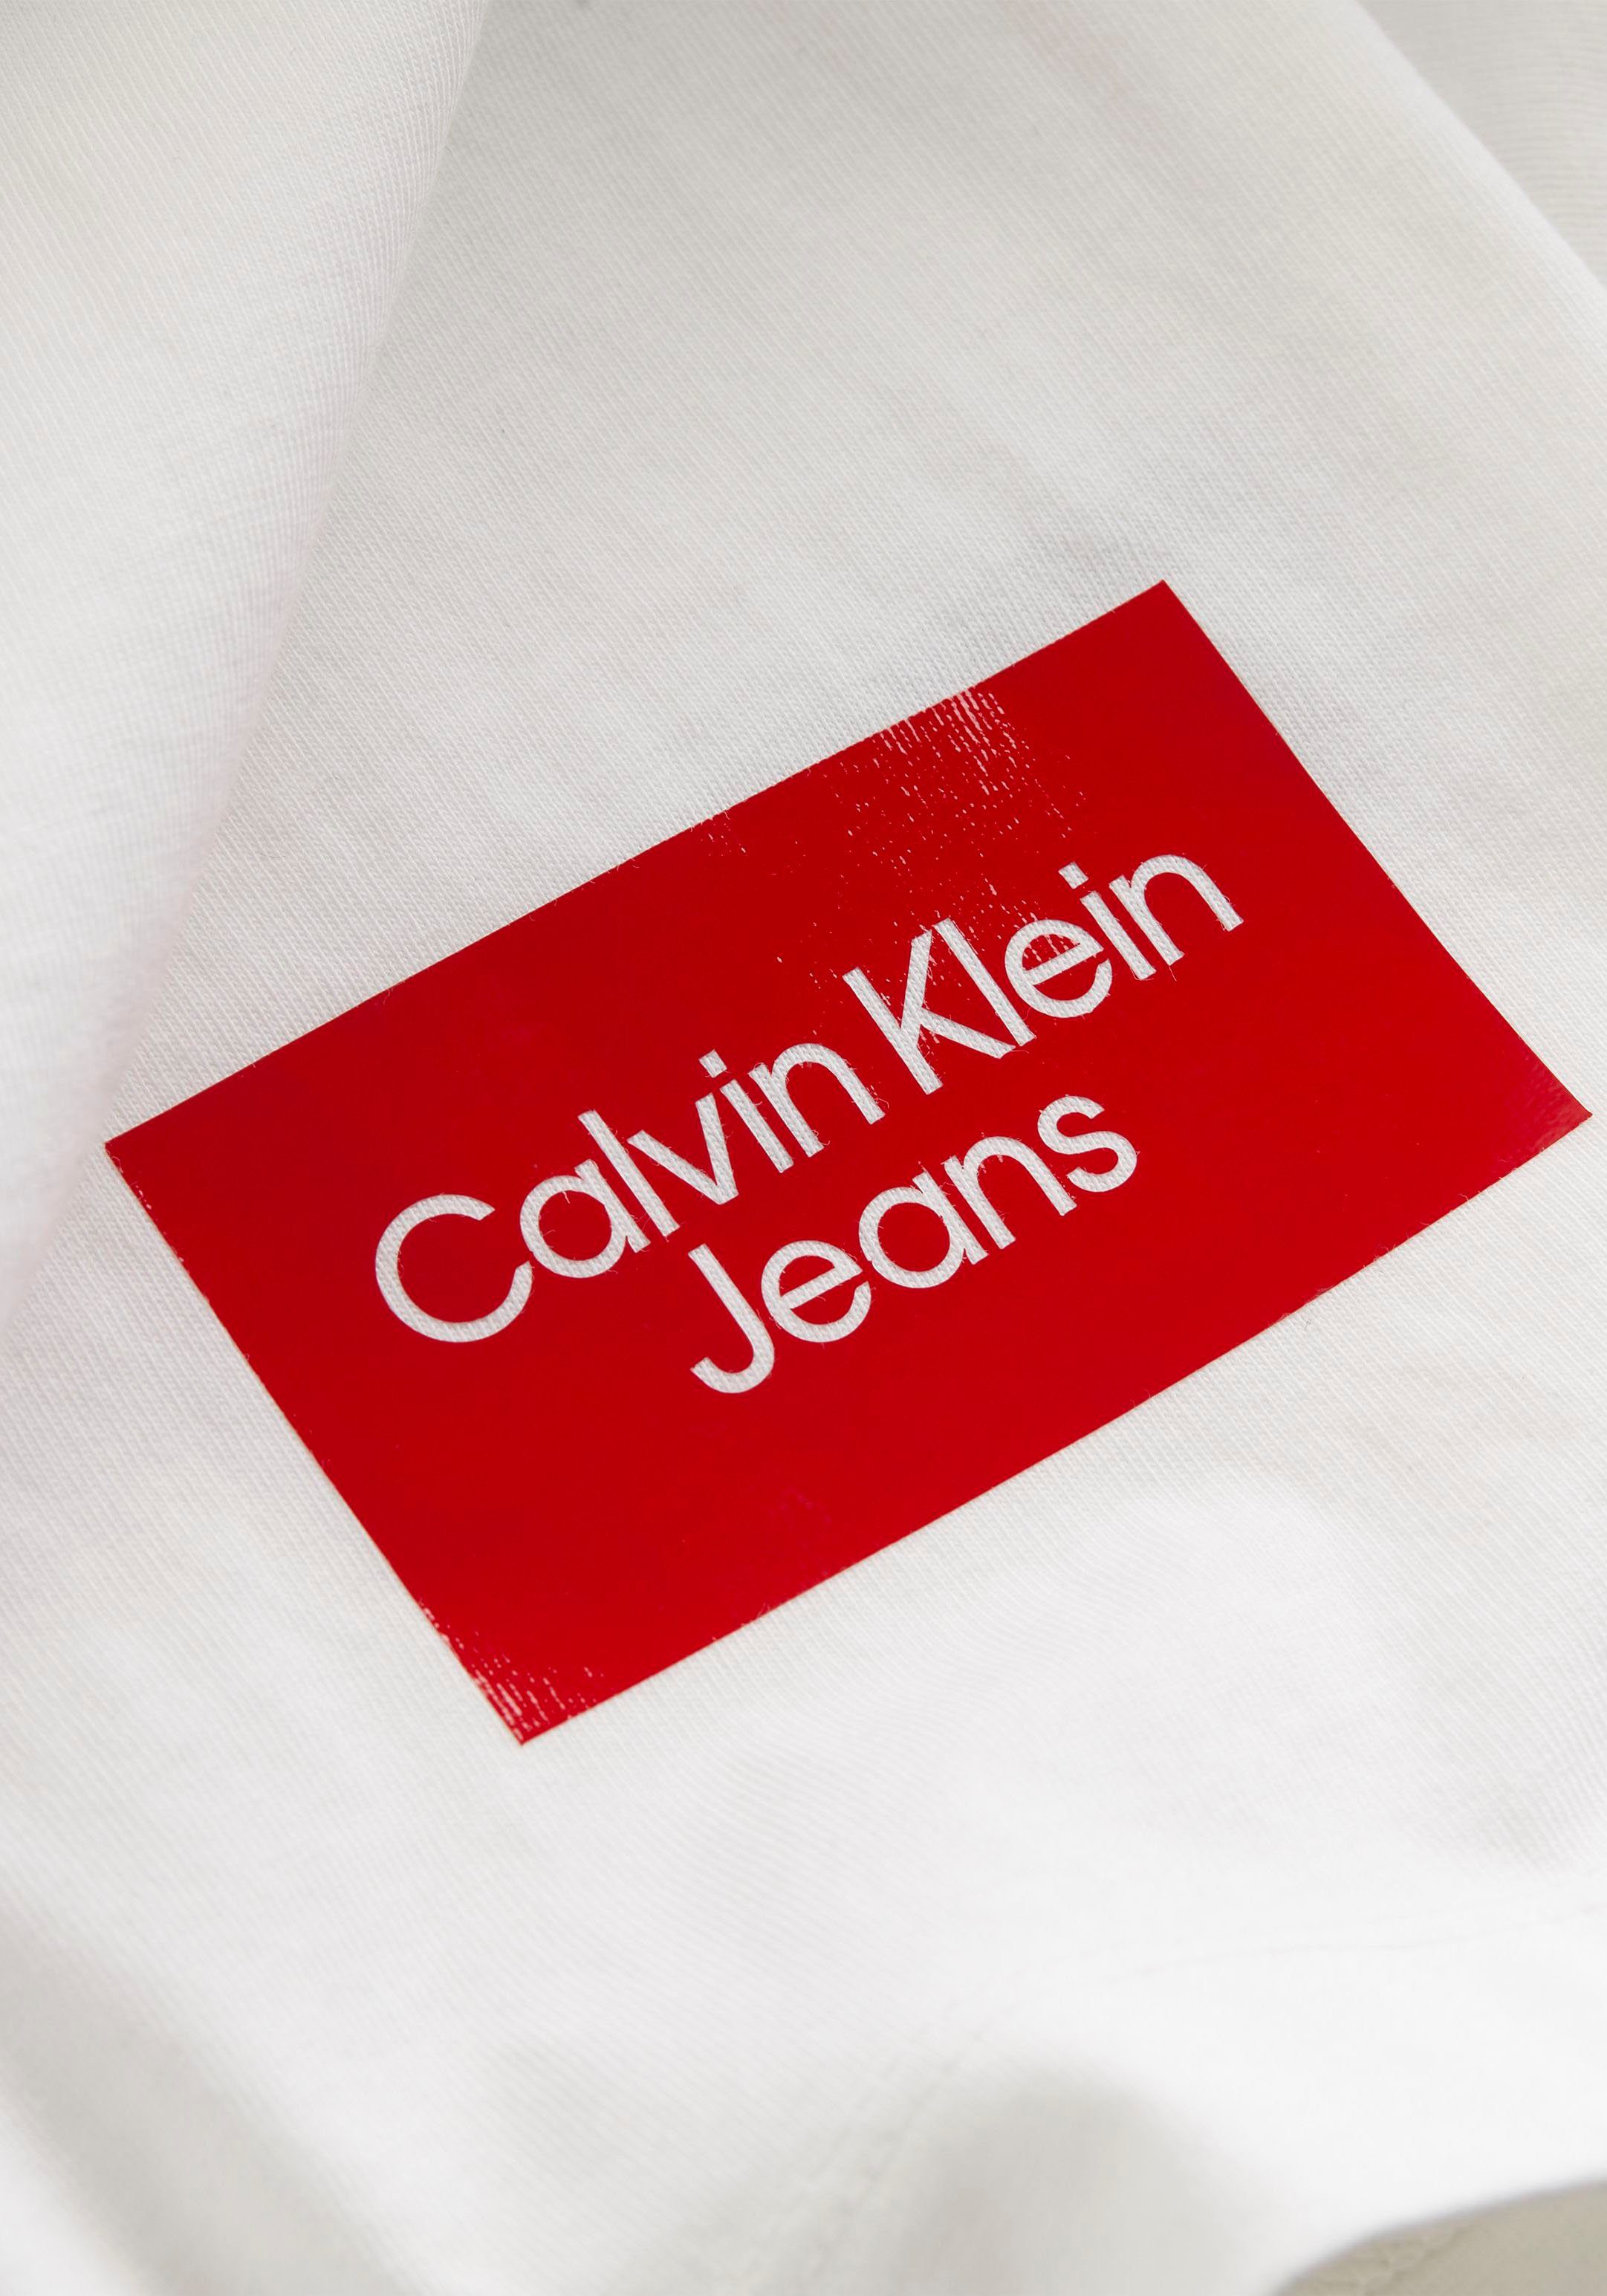 Jeans Rundhalsausschnitt T-Shirt LOGO TEE Klein Calvin Bright COLORBLOCK mit White BOLD